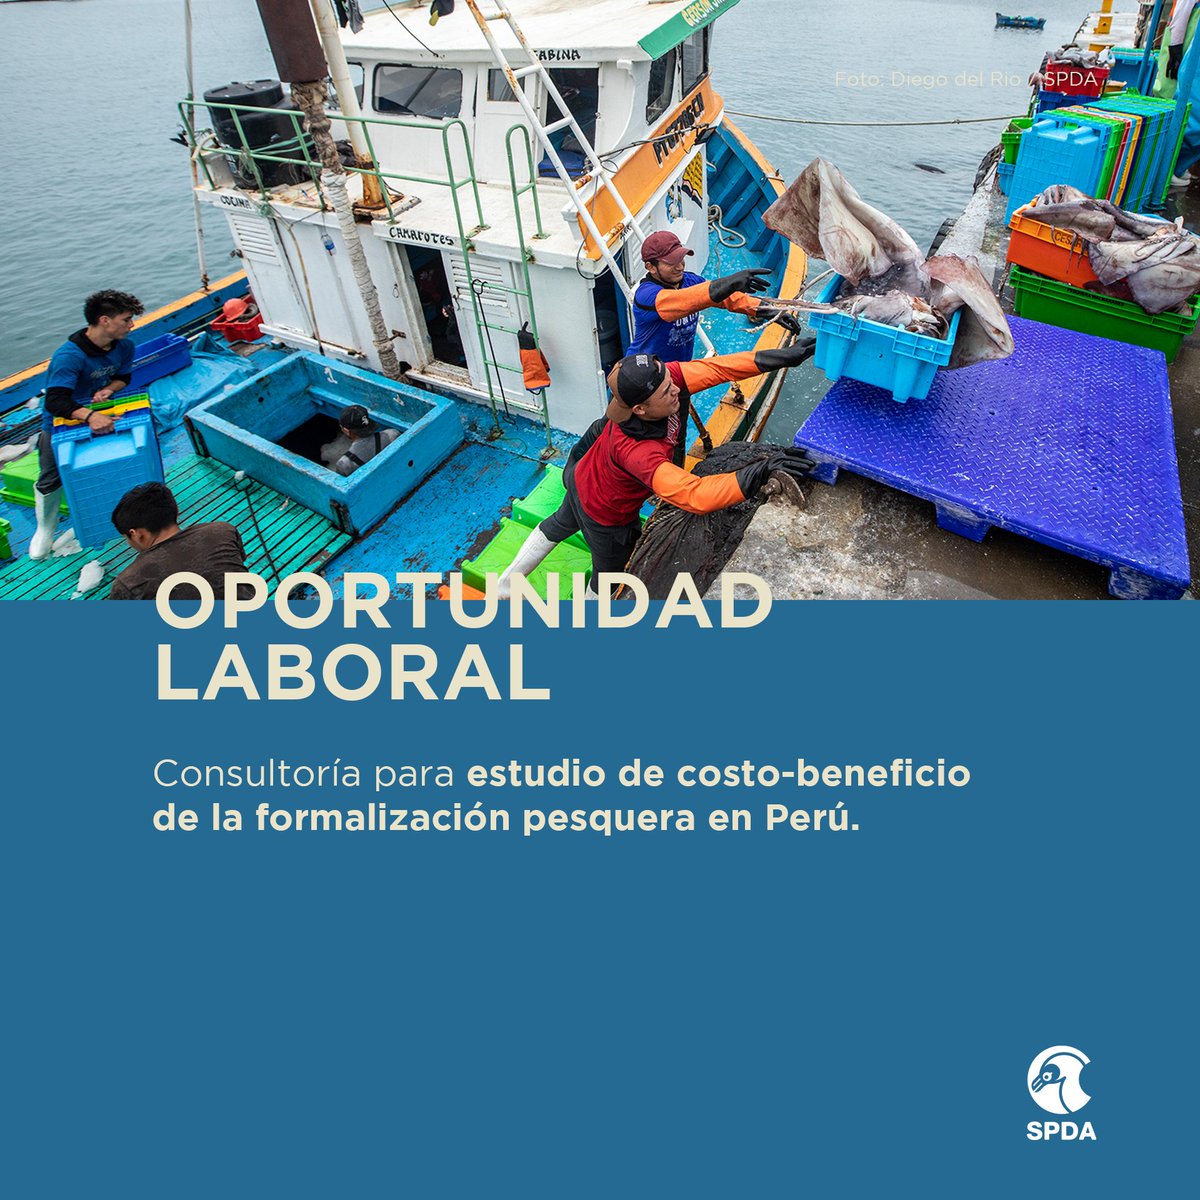 👩🏽‍💻👨🏽‍💻 #OportunidadLaboral | Buscamos especialista para el apoyo en la recolección, análisis, y reporte del primer estudio de costo-beneficio de la formalización del proyecto Por la Pesca en Perú.
➡ Postula hasta el 31/05/2024
➡ TDR: bit.ly/4dTlWHp